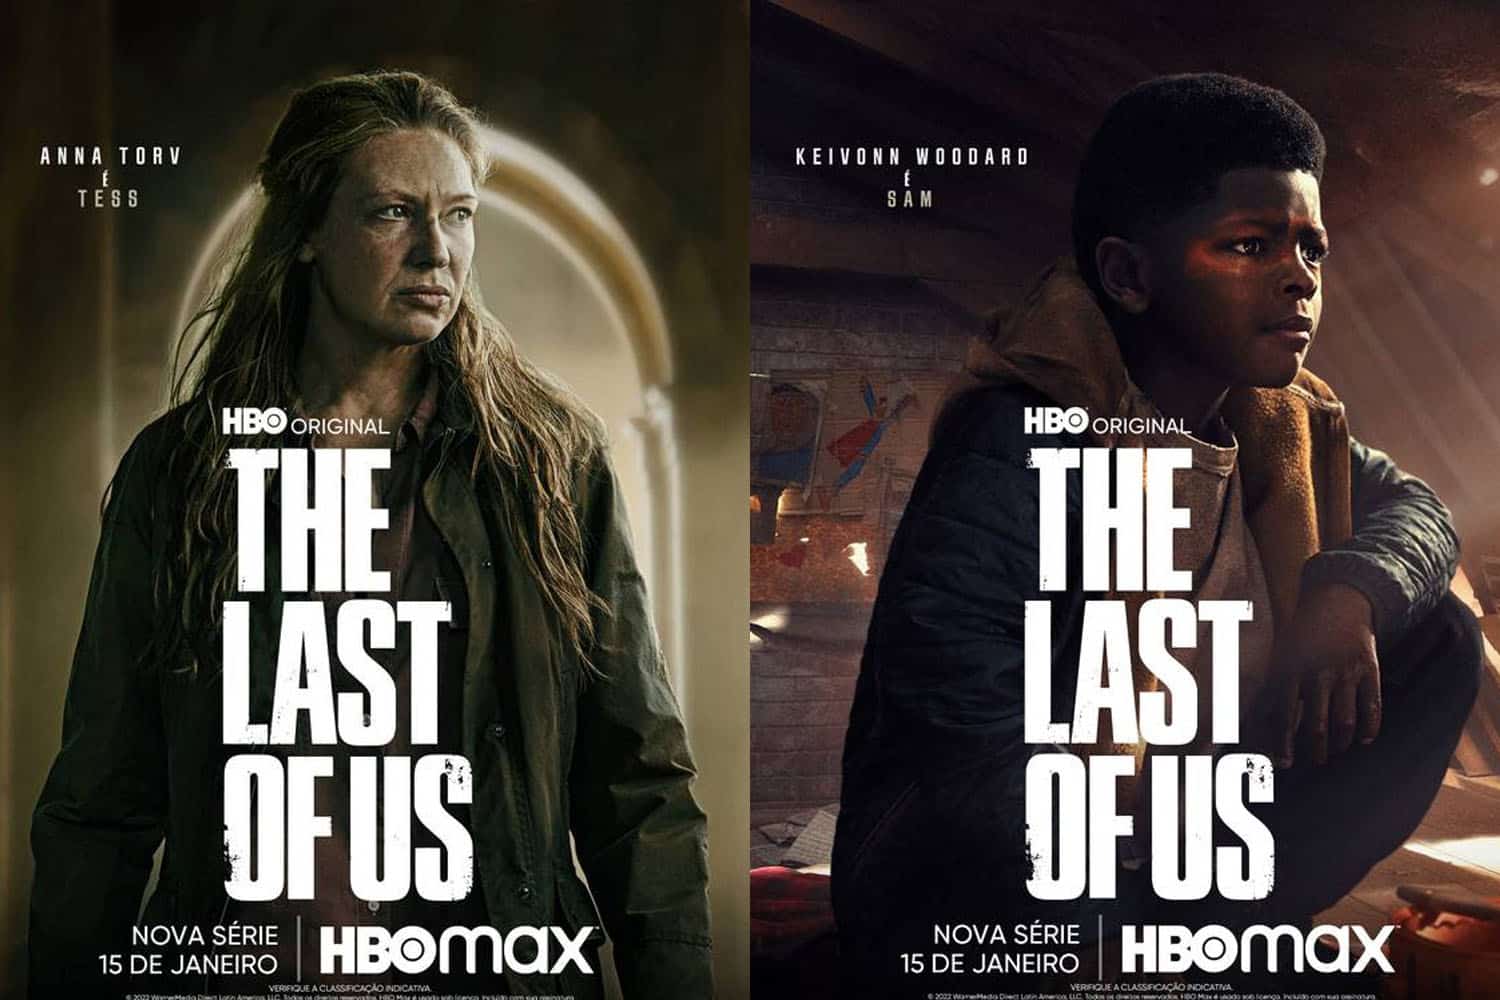 Veja pôsteres dos personagens de The Last of Us da HBO - PSX Brasil